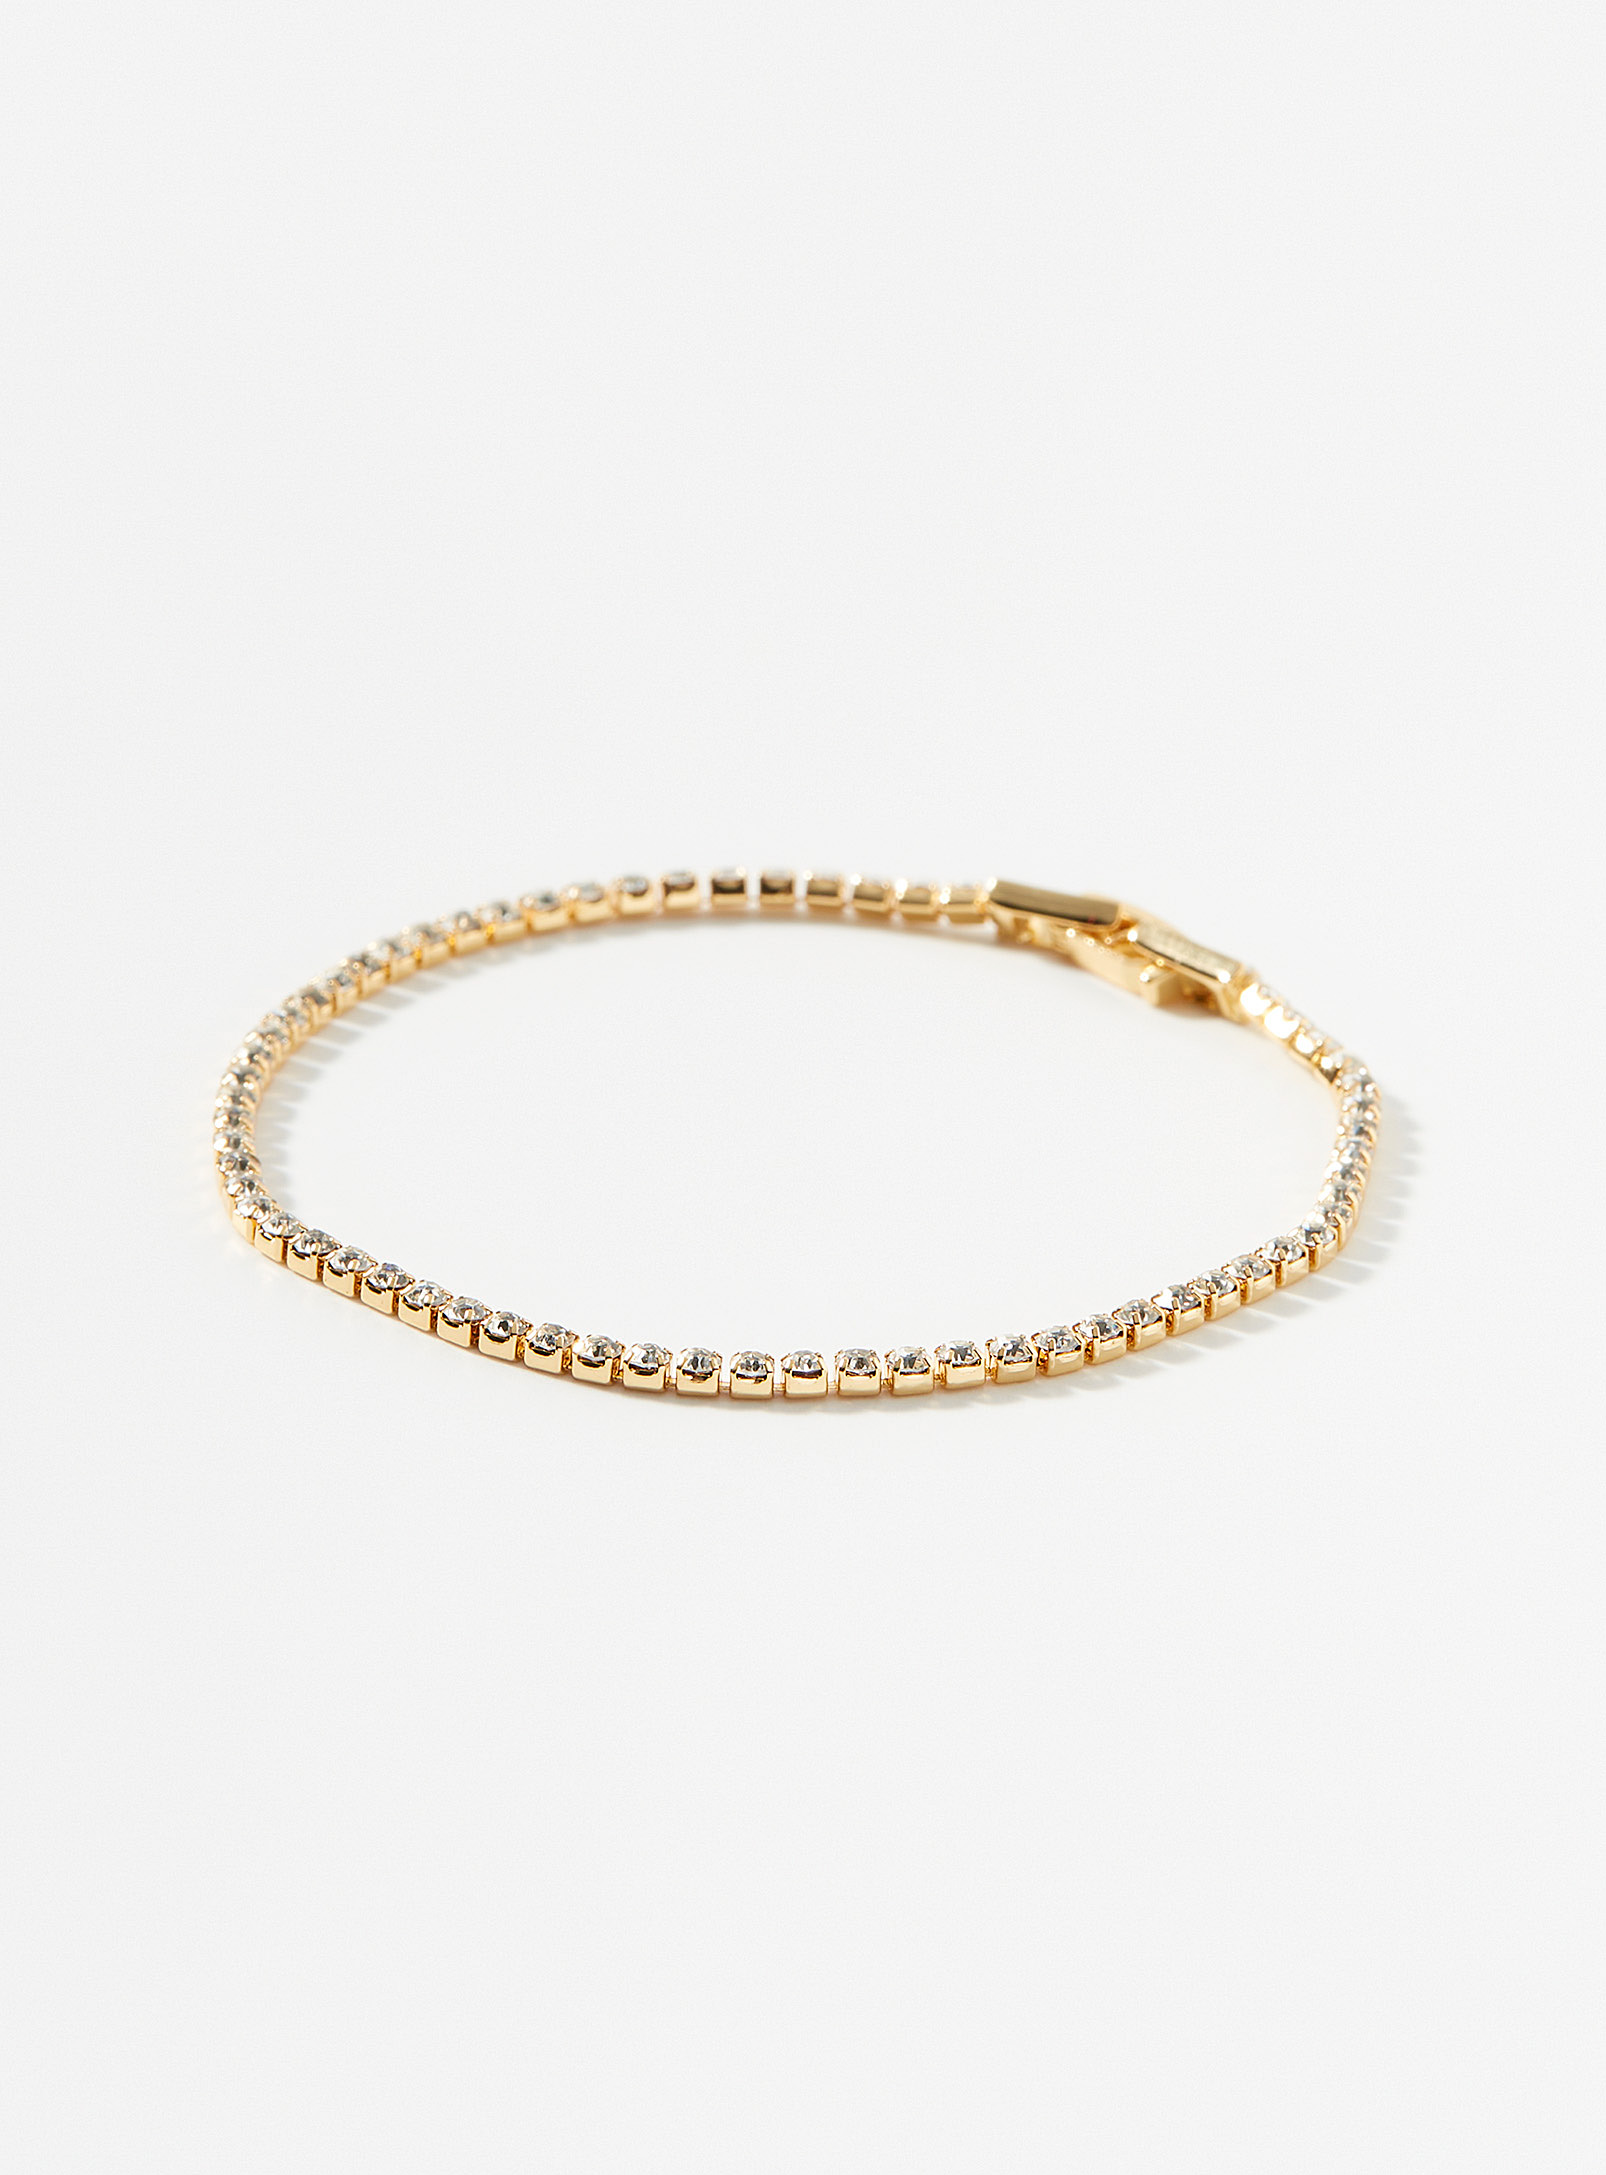 Simons - Women's Golden tennis bracelet